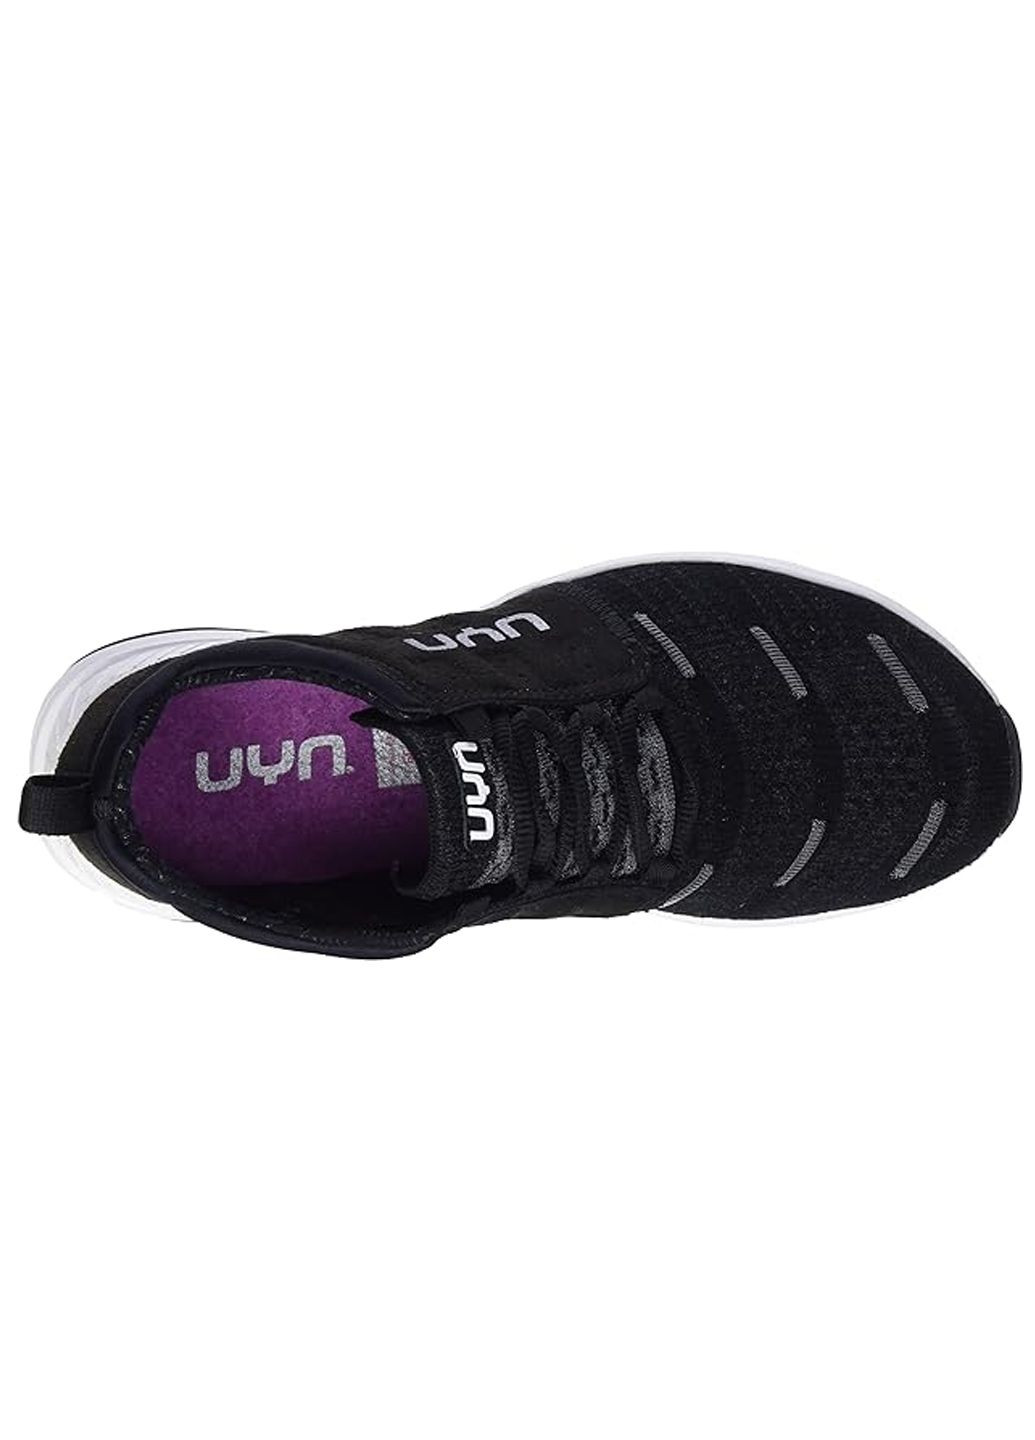 Комбіновані кросівки жіночі UYN Air Dual Tune G035 Anthracite/Black